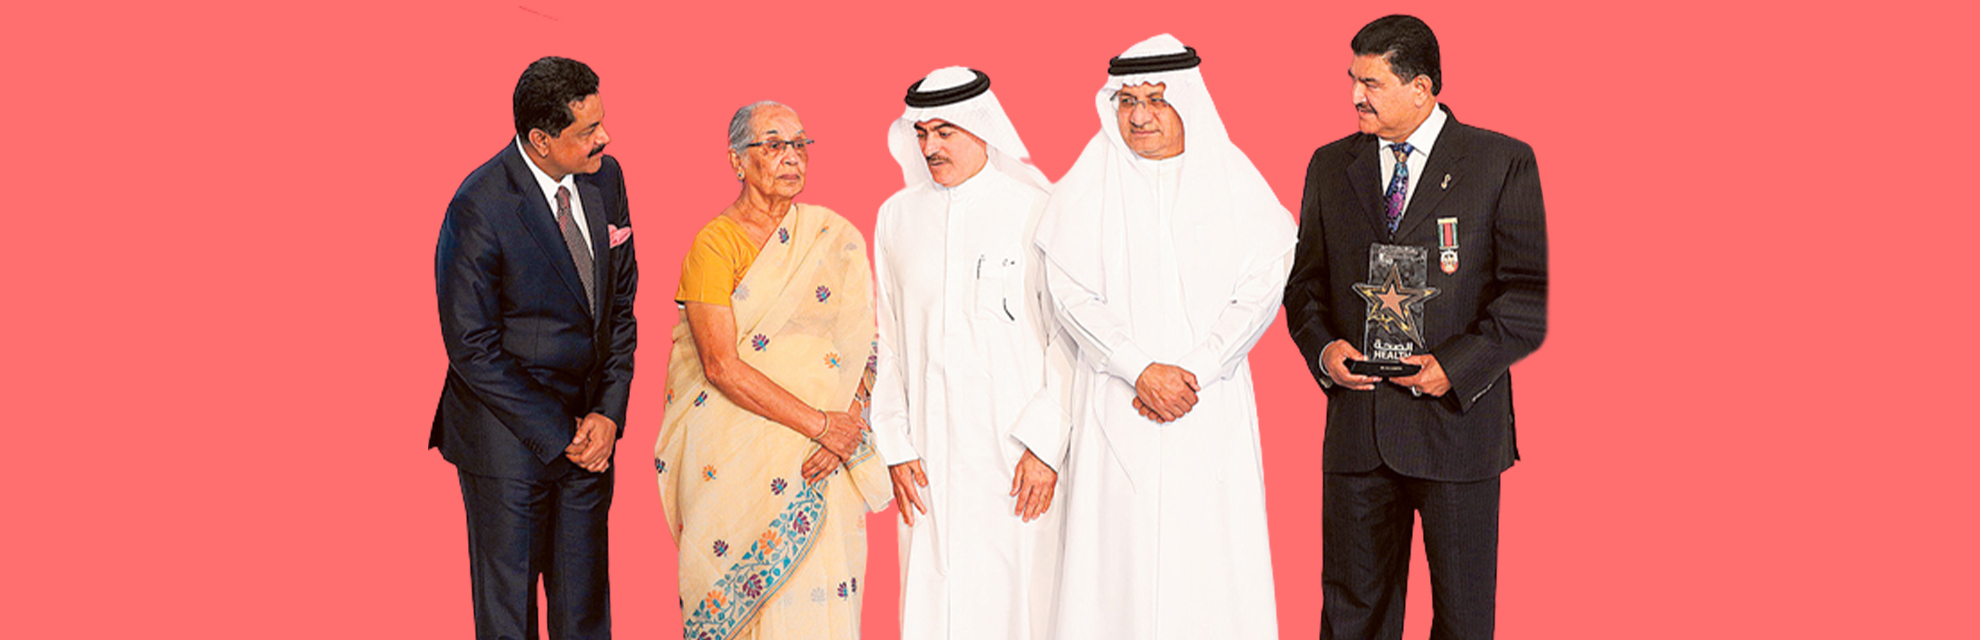 జులేఖా దౌద్ నుండి మామా జులేఖ వరకు: UAE యొక్క మొదటి మహిళా భారతీయ వైద్యుని కథ